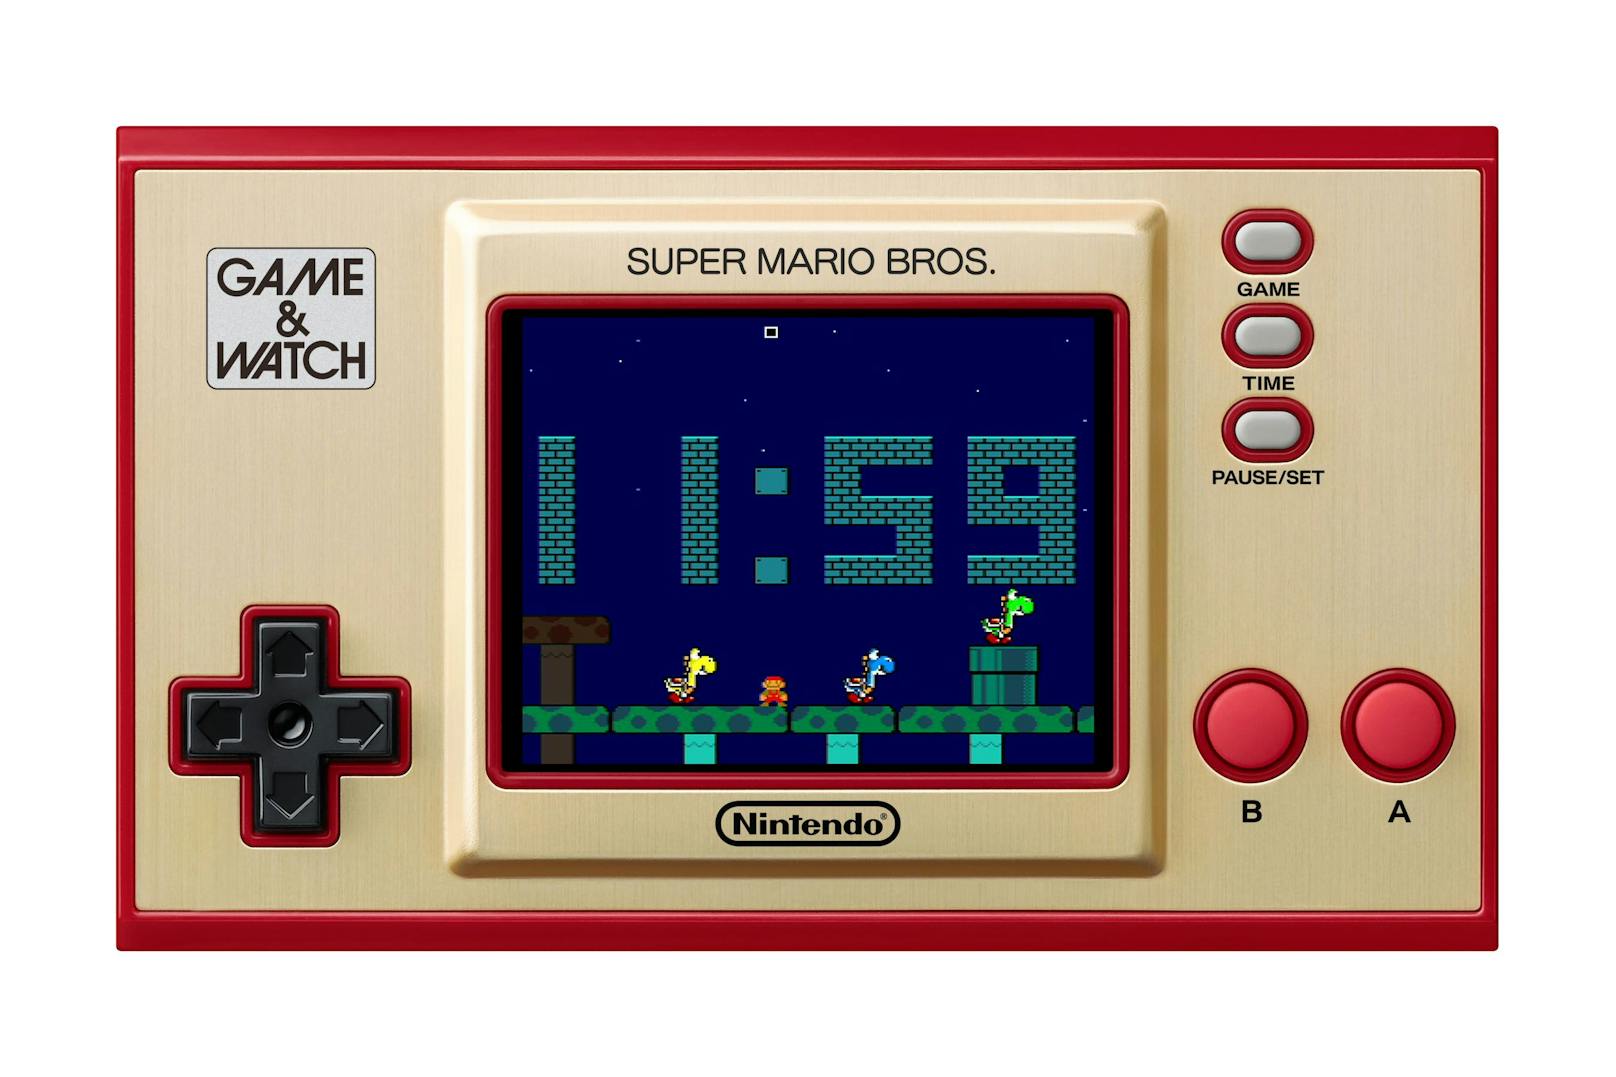 Laut Nintendo bietet die Uhr 35 unterschiedliche Animationen. Mit den Knöpfen auf dem Gerät kann man sogar ins Geschehen eingreifen und Gegner erschaffen, auf die Mario reagiert.